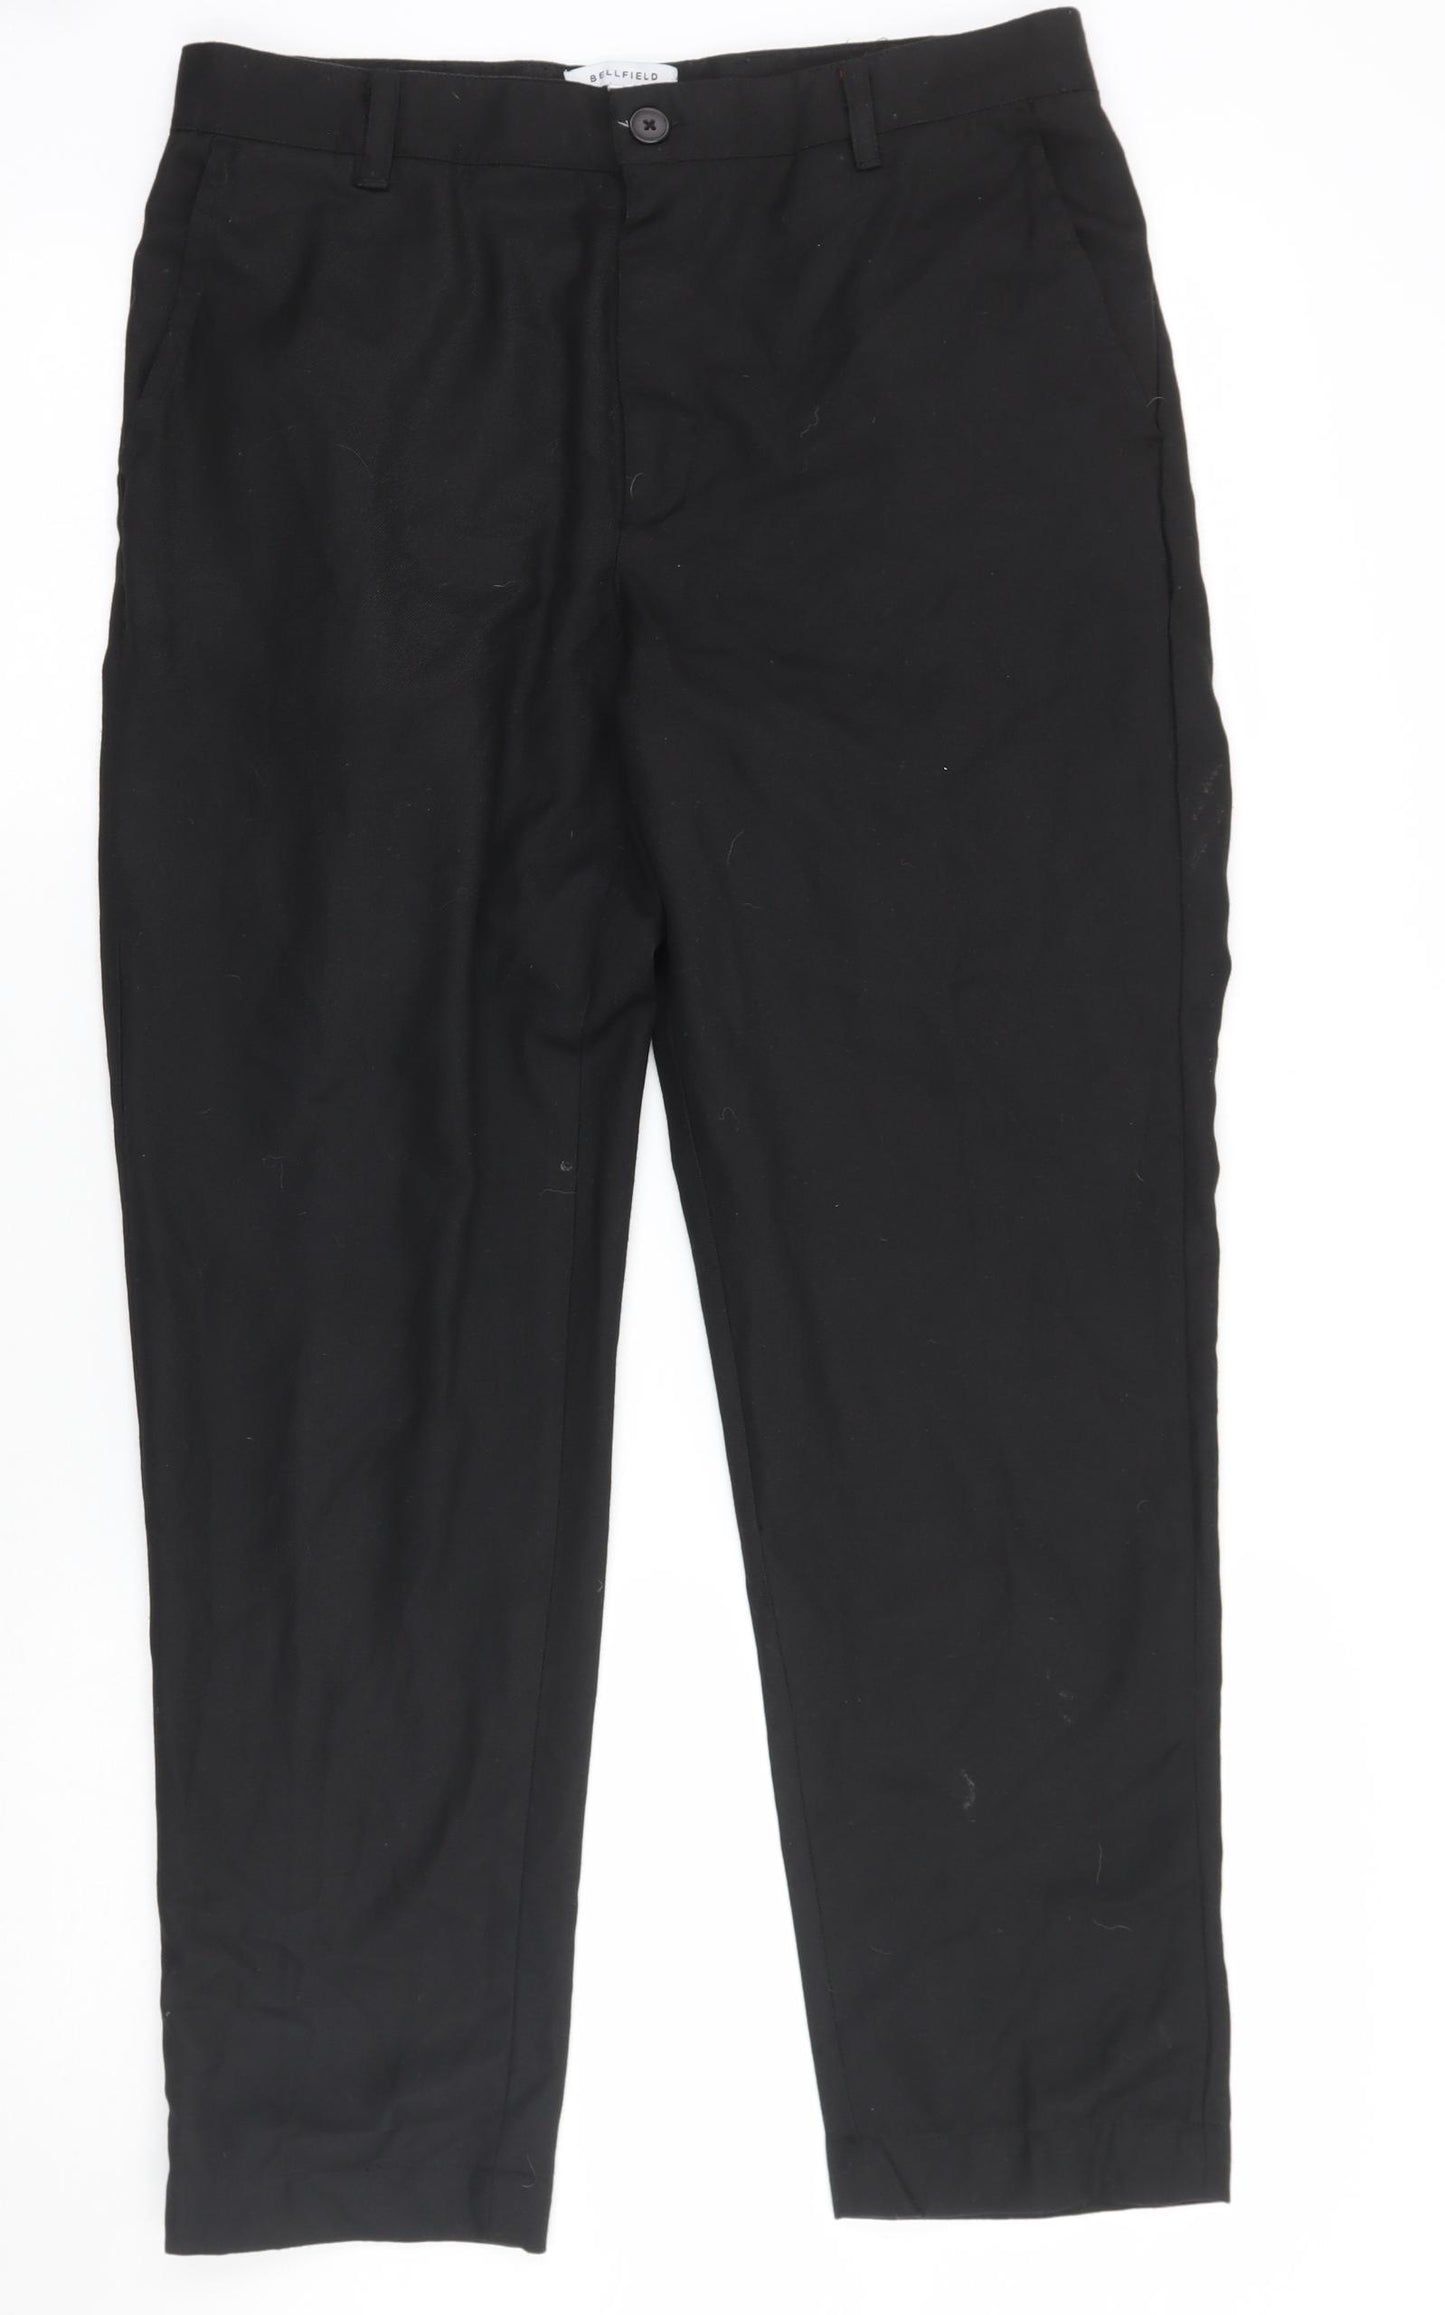 Bellfield Mens Black   Trousers  Size 30 L27 in